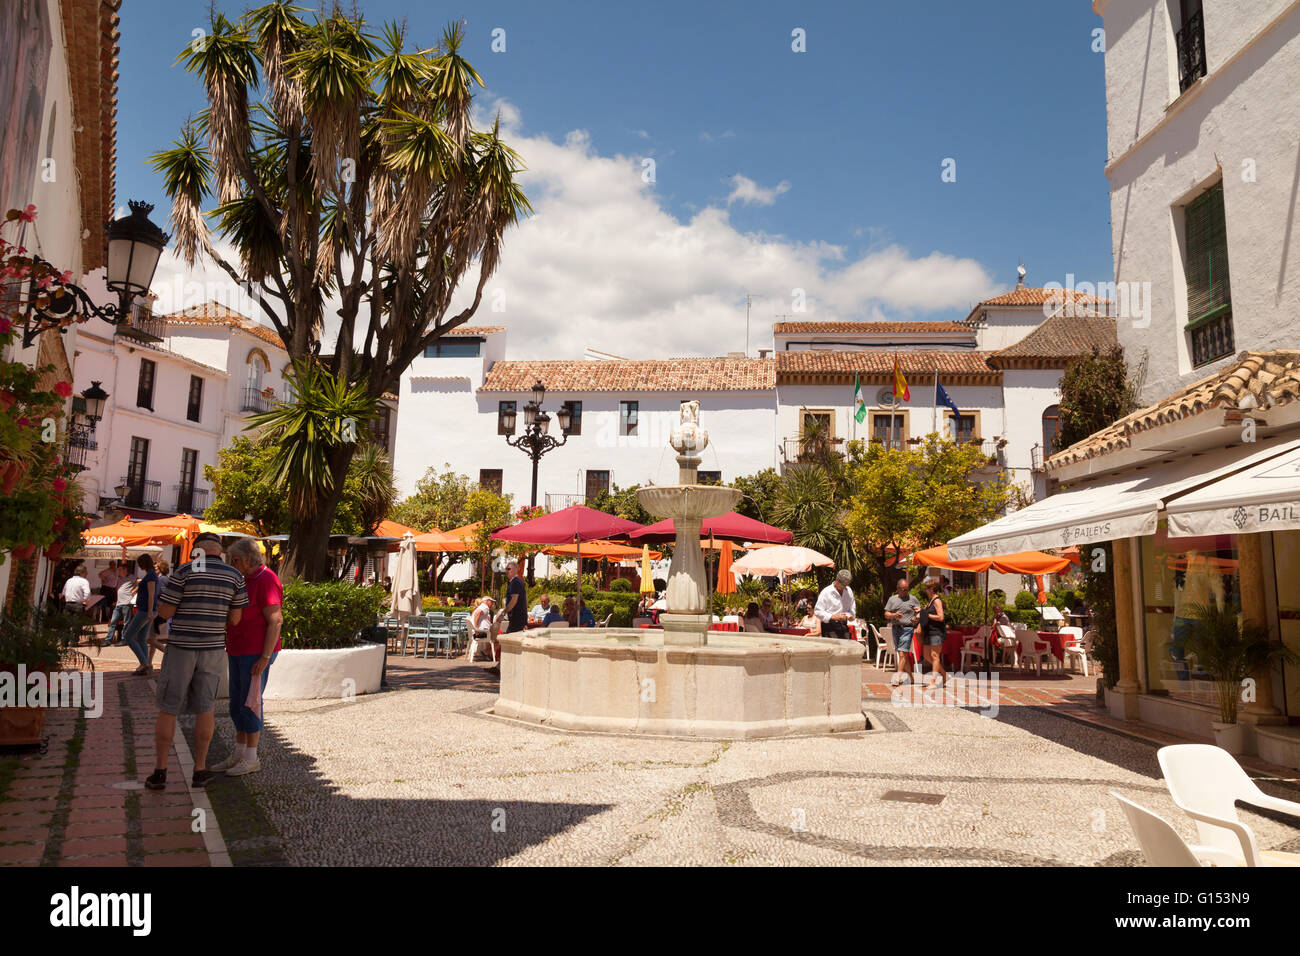 Les touristes et les cafés de carré orange ( Plaza de los Naranjos ), vieille ville de Marbella, Andalousie Espagne Europe Banque D'Images